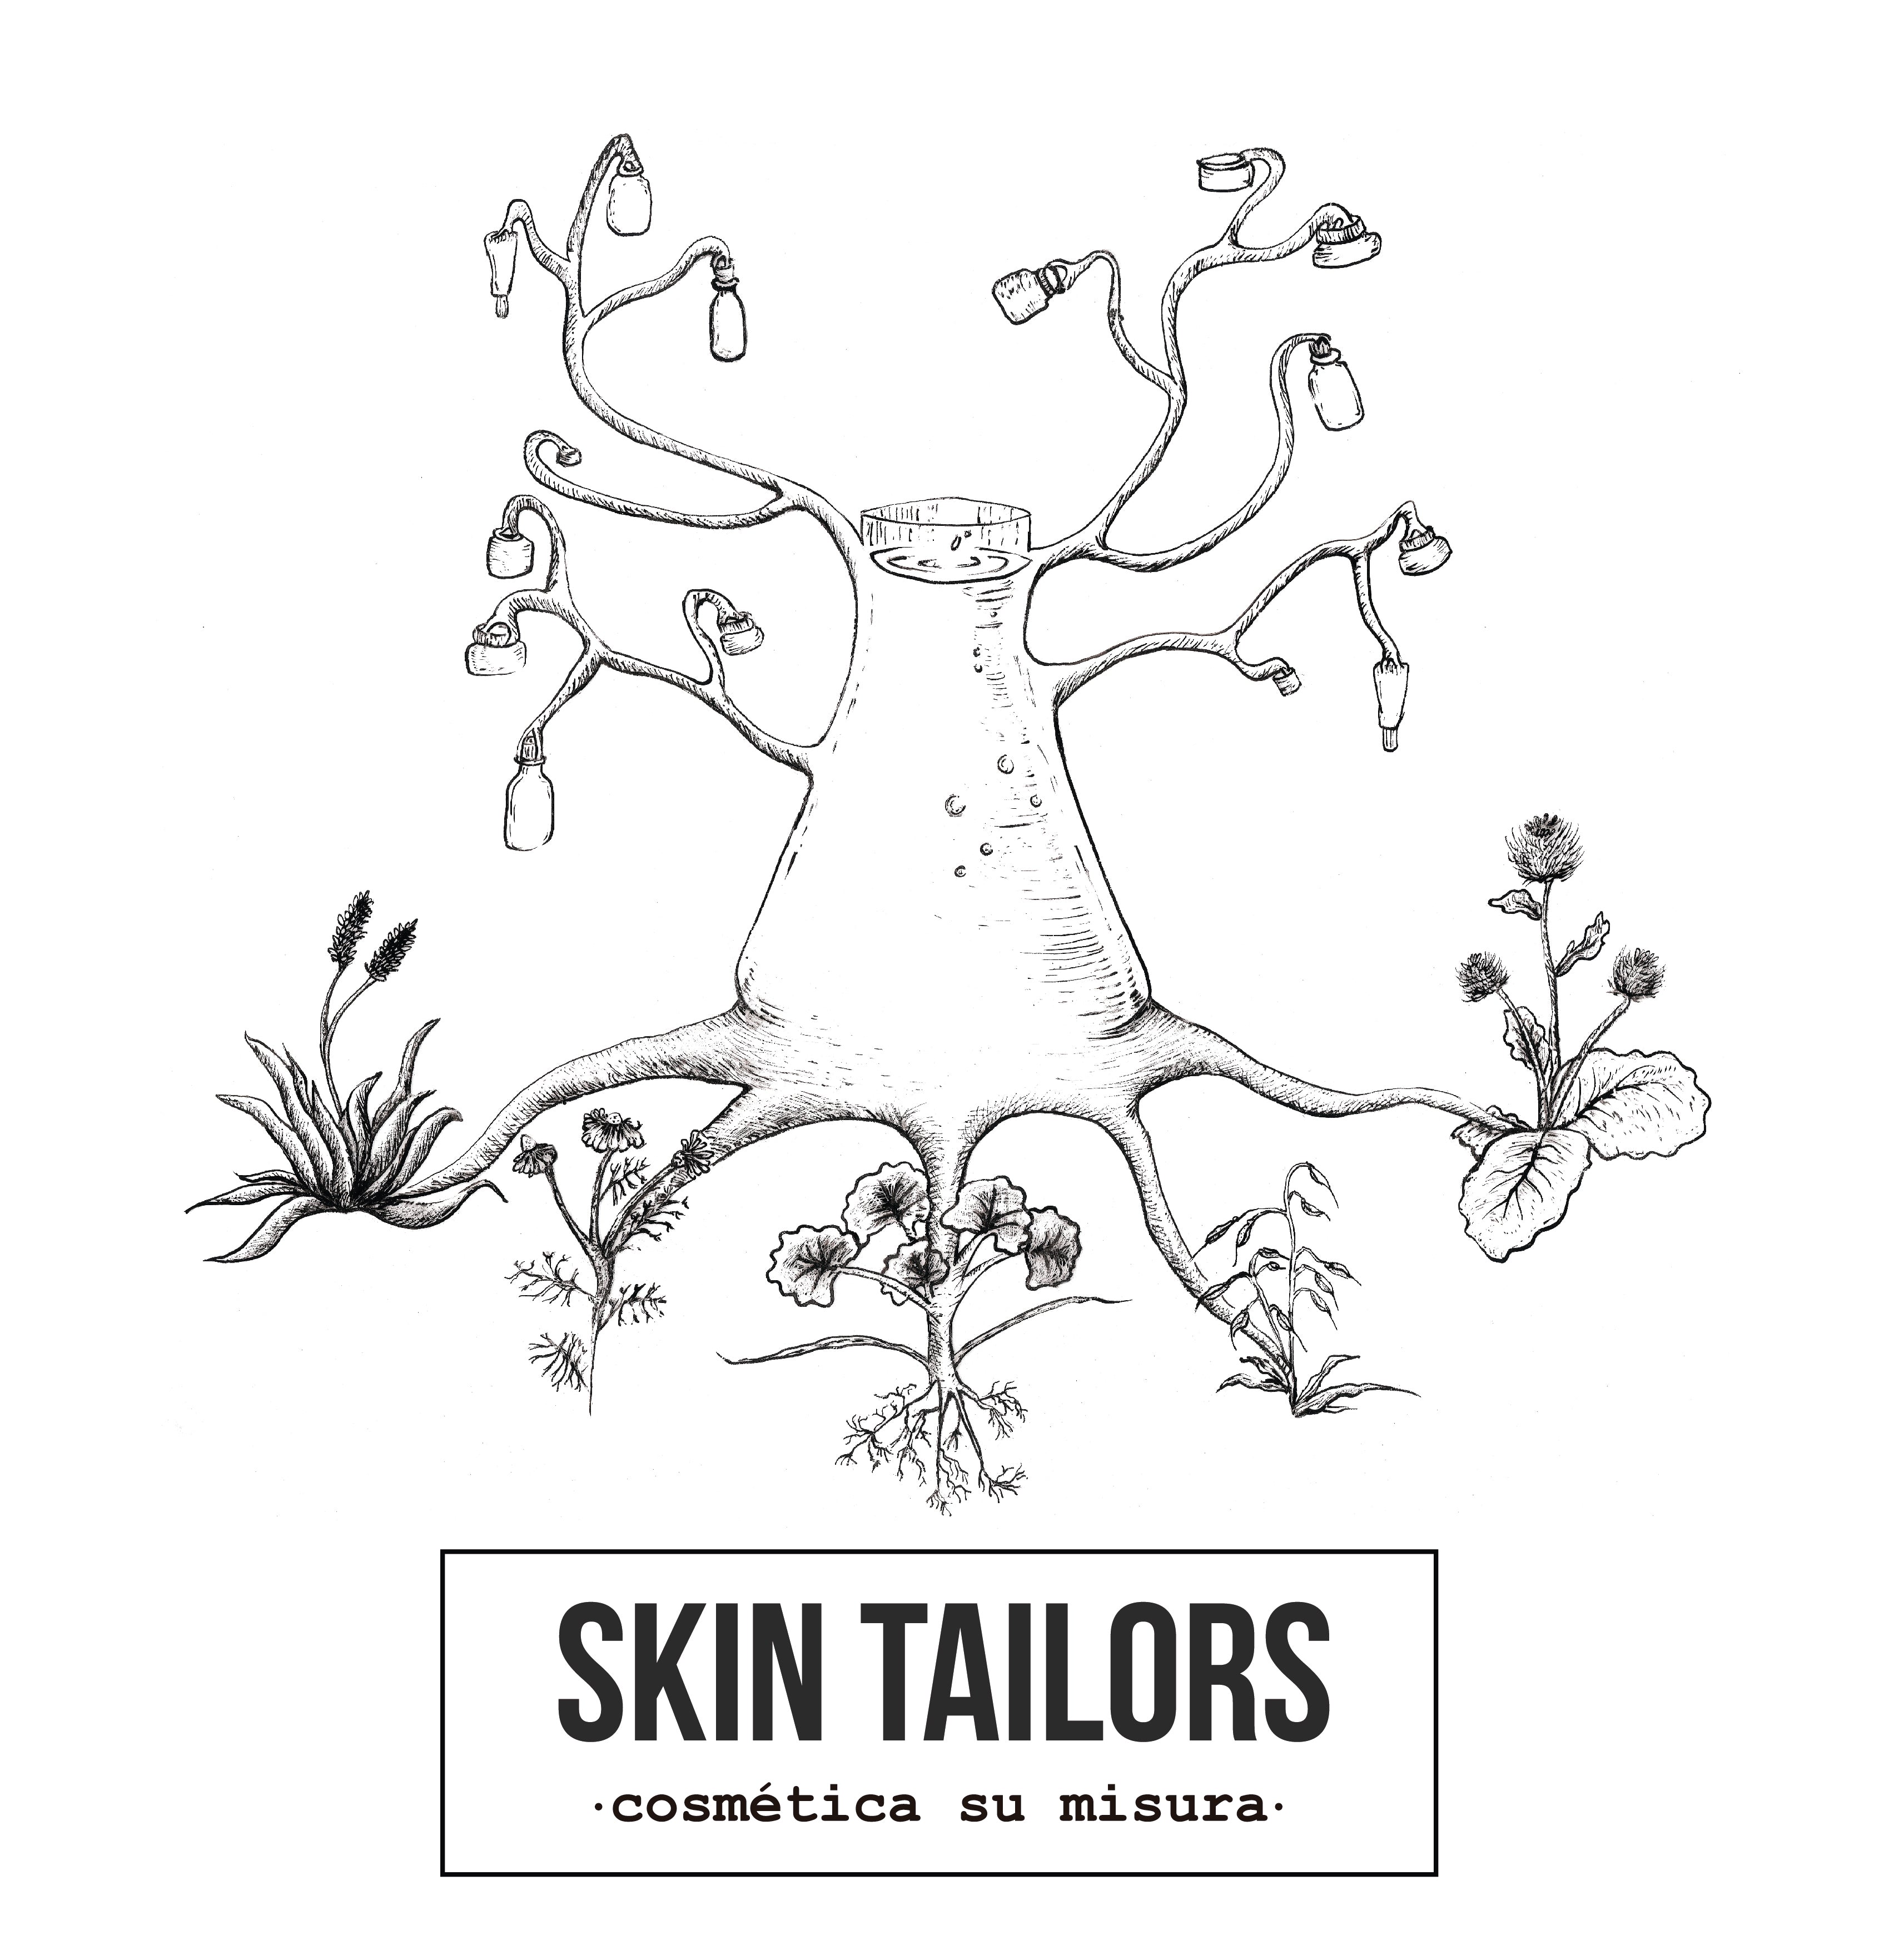 Skin Tailors arbol con symboles